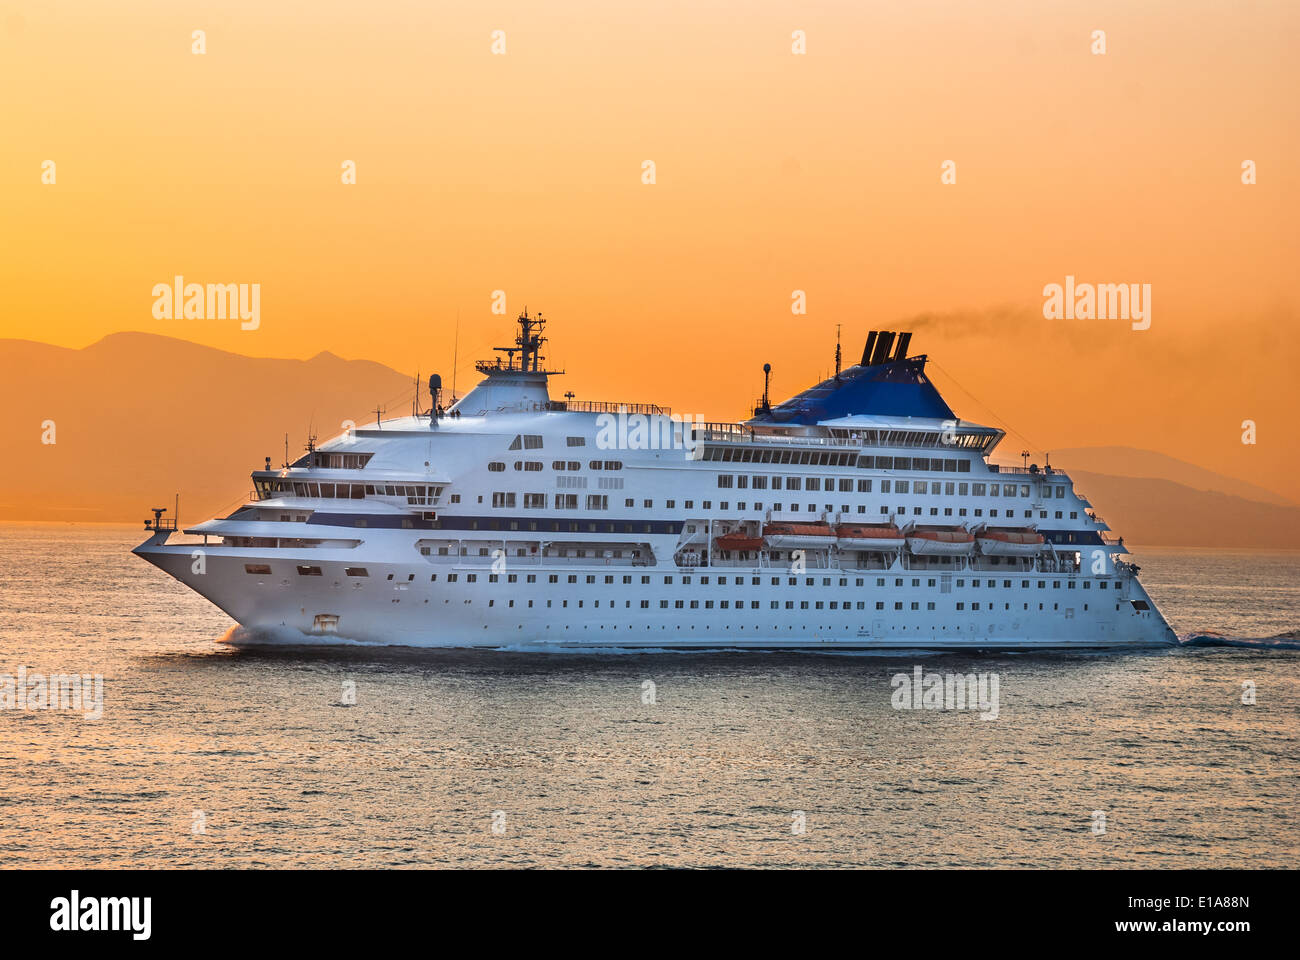 Imagen con un crucero turístico, tomada el 17 de septiembre de 2010, en el Mar Egeo, las islas griegas. Foto de stock